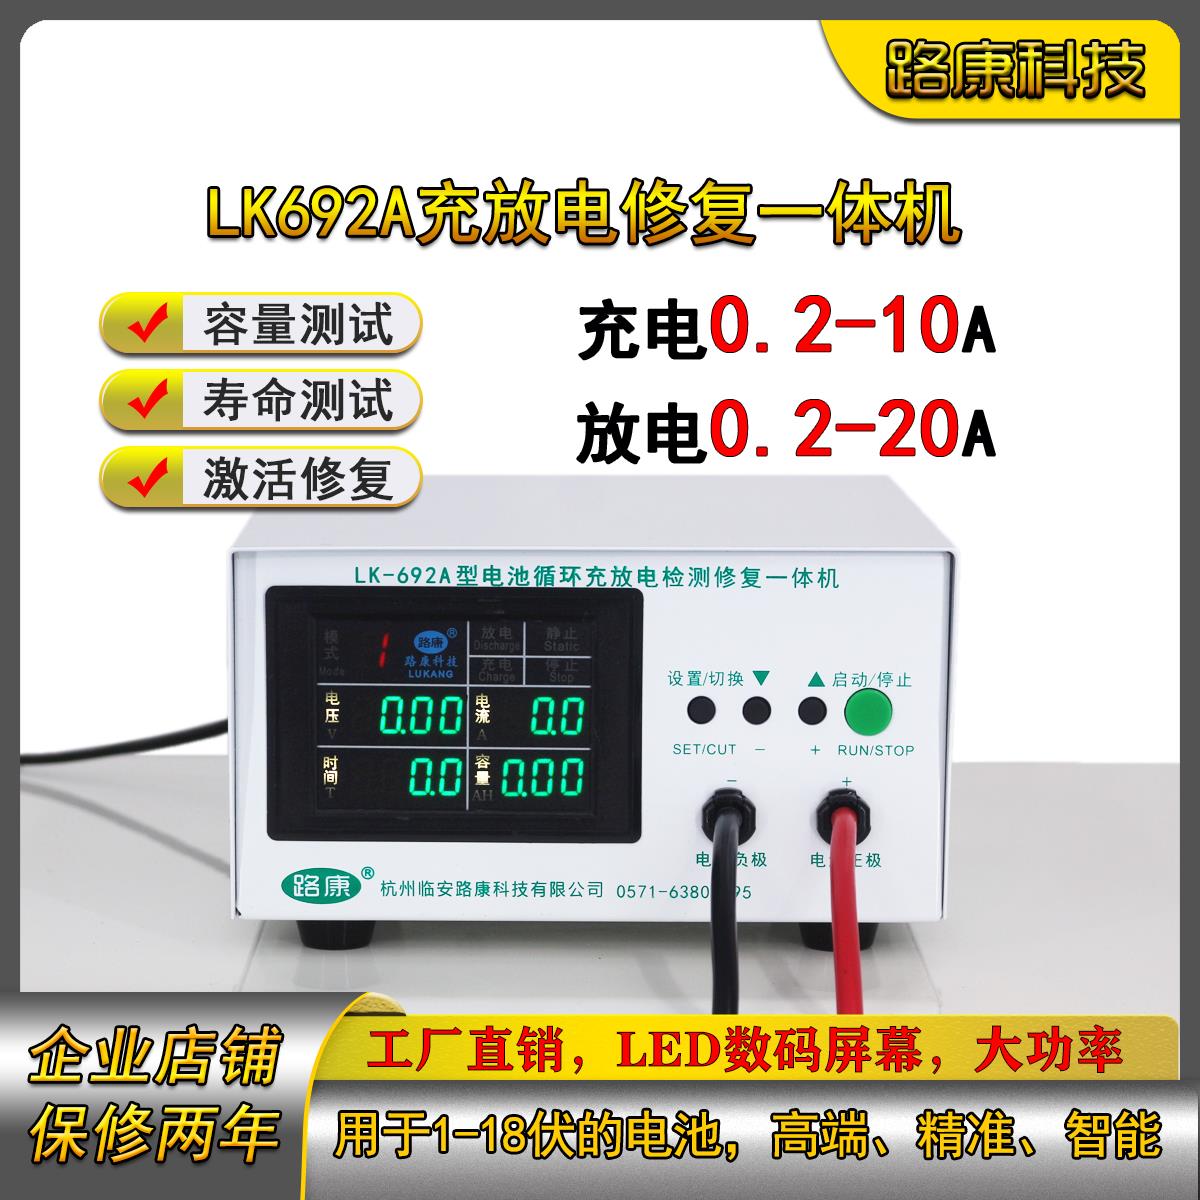 【台灣公司 超低價】路康LK692A型電池循環充放電檢測修復一體機